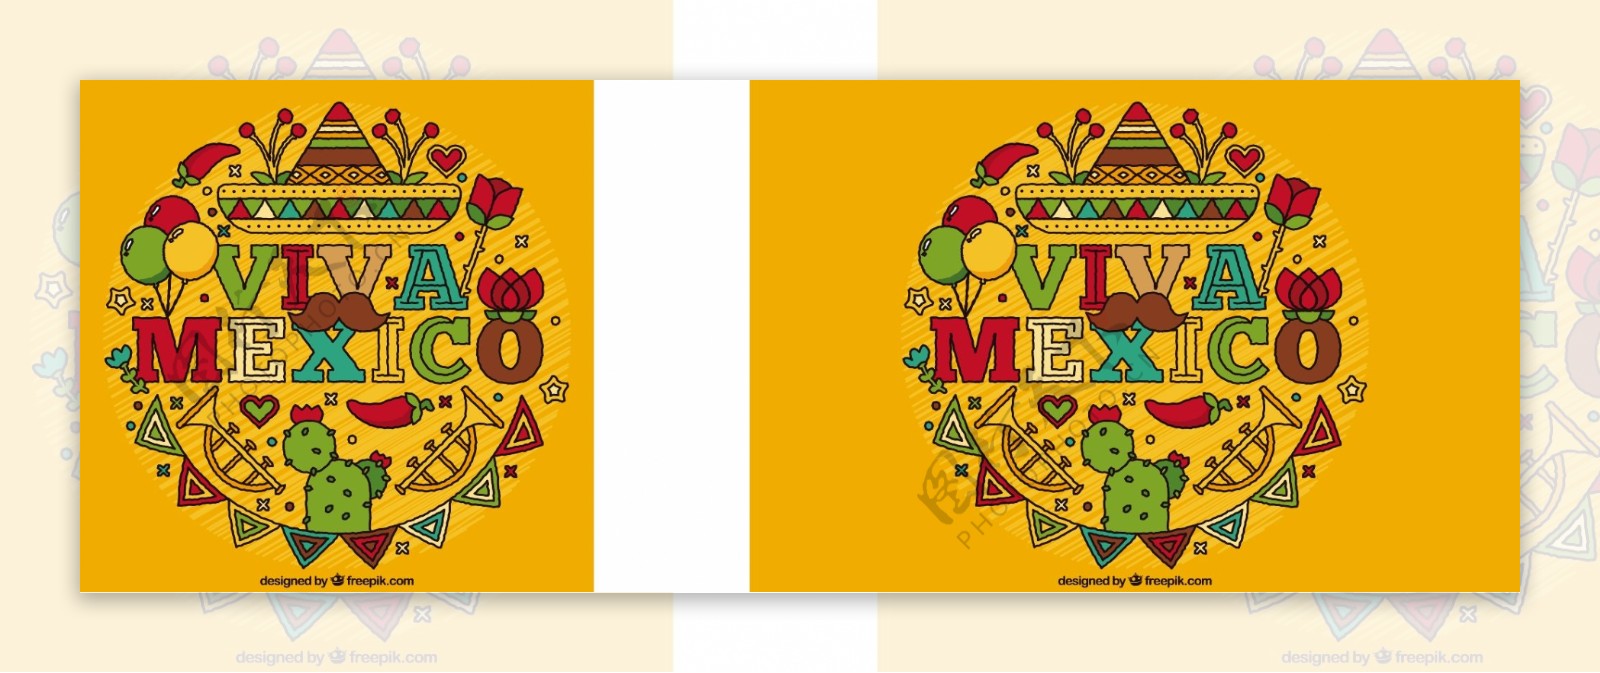 丰富多彩的背景与传统的墨西哥元素